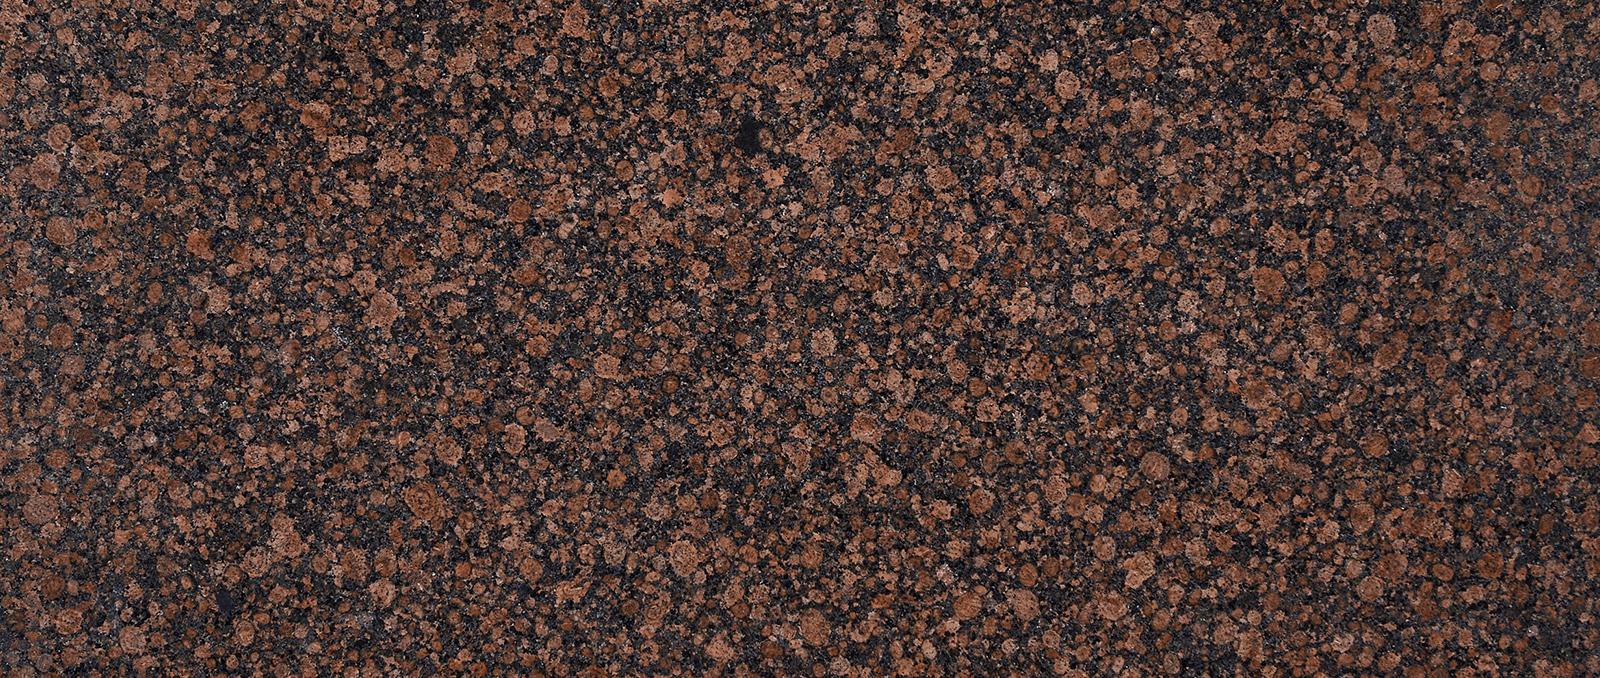 vreaupiatra-granit-baltic-brown-banner